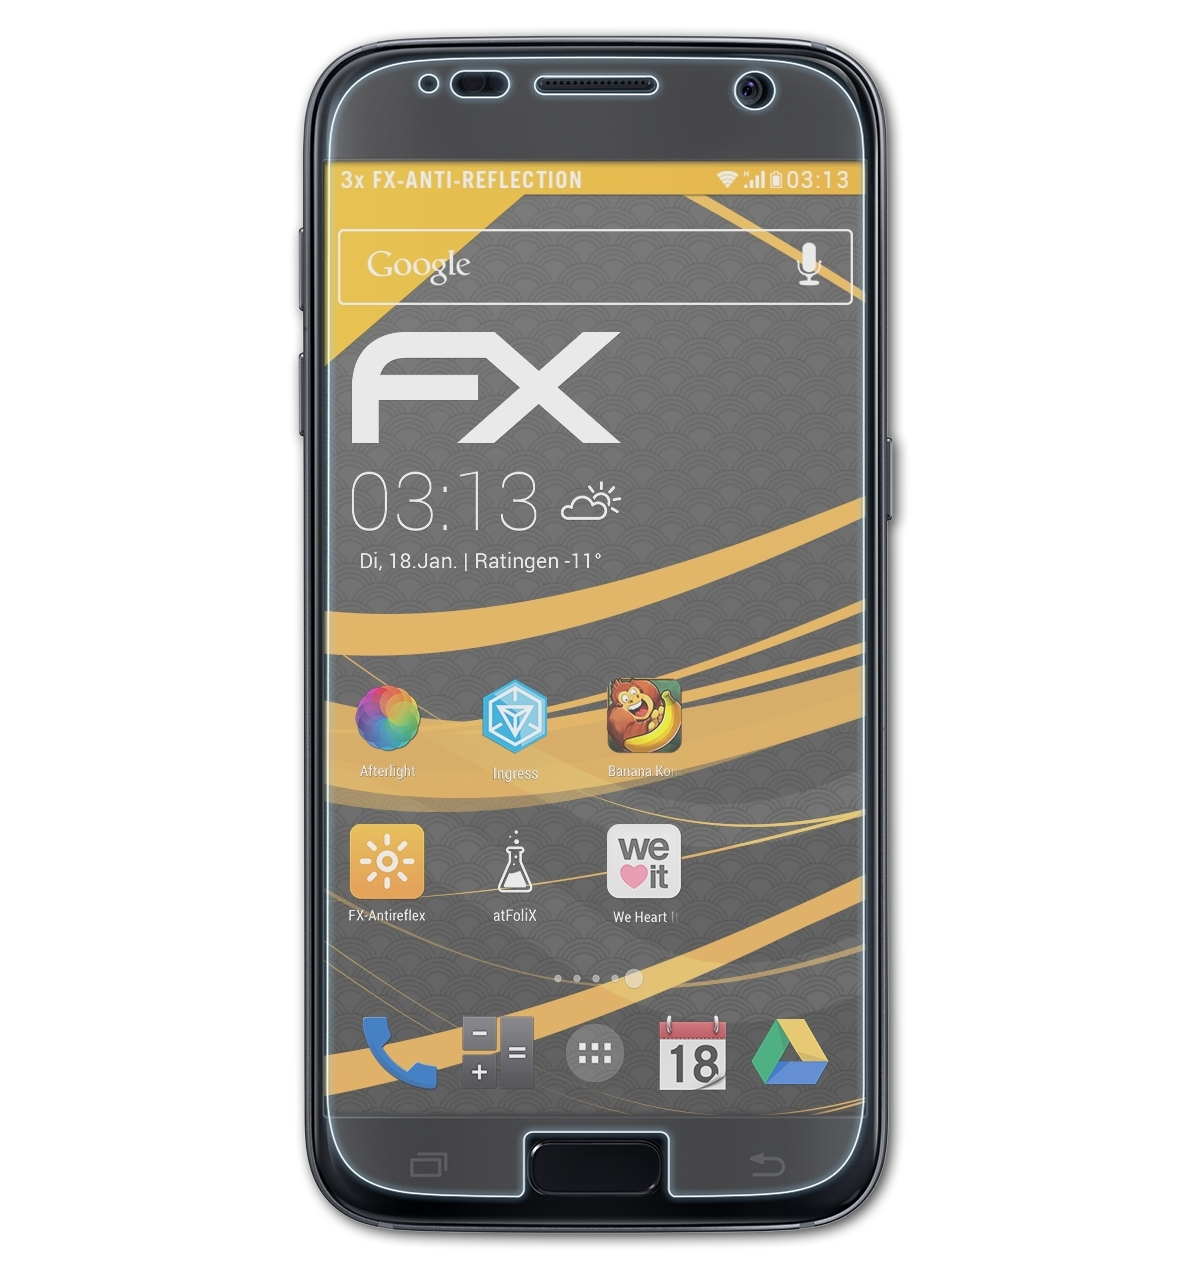 S7) Displayschutz(für Samsung Galaxy 3x ATFOLIX FX-Antireflex